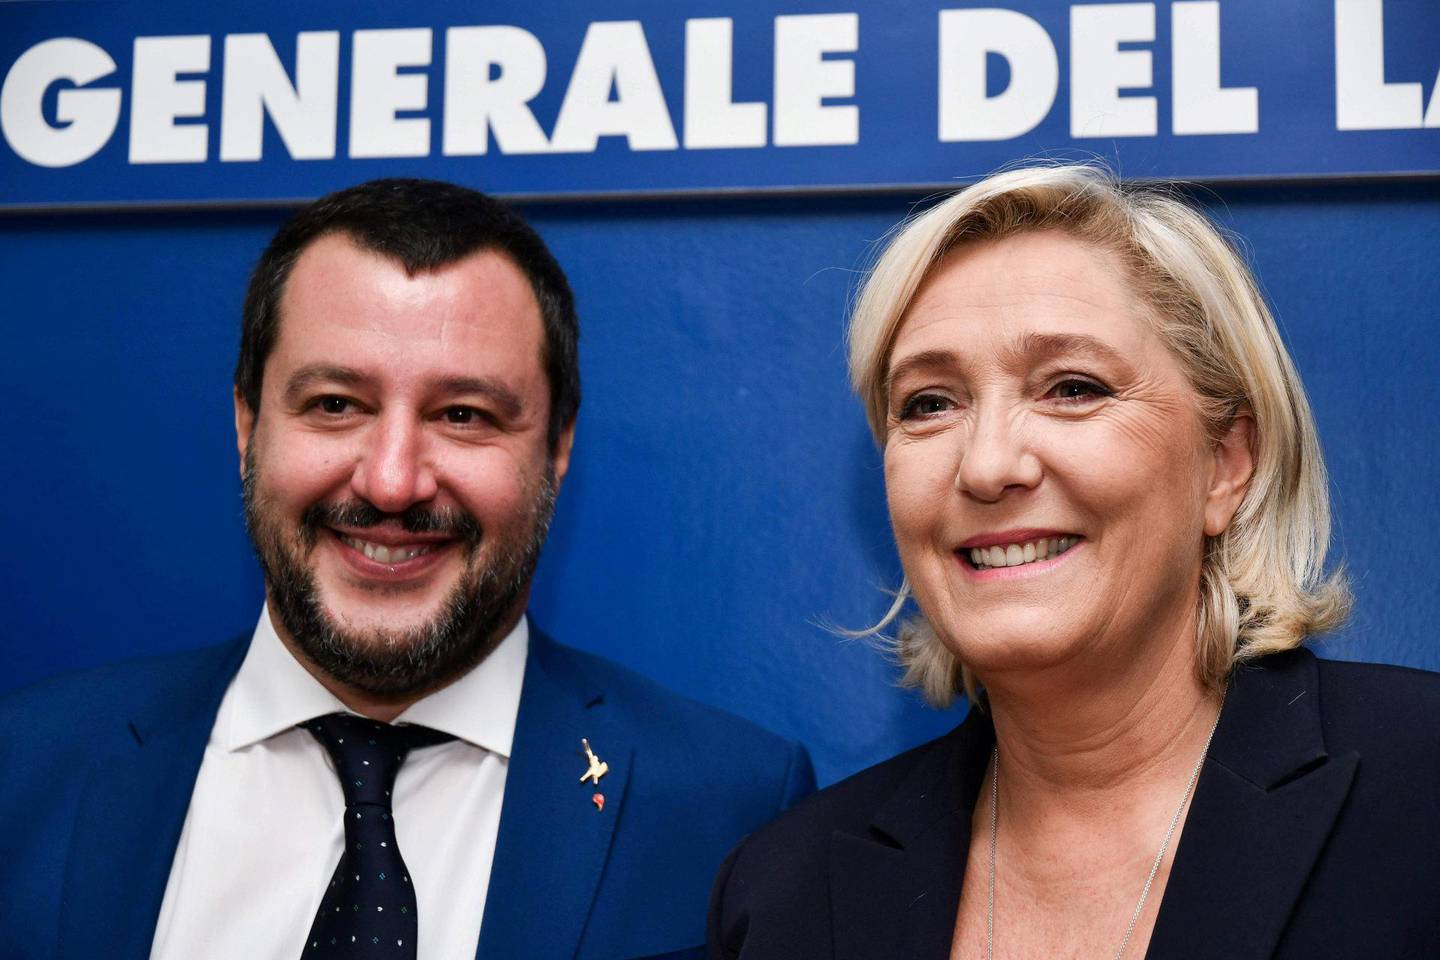 ENDRET: Partiene til italienske Matteo Salvini (t.v.) og franske Marine Le Pen har endret ståsted om EU. FOTO: NTB SCANPIX